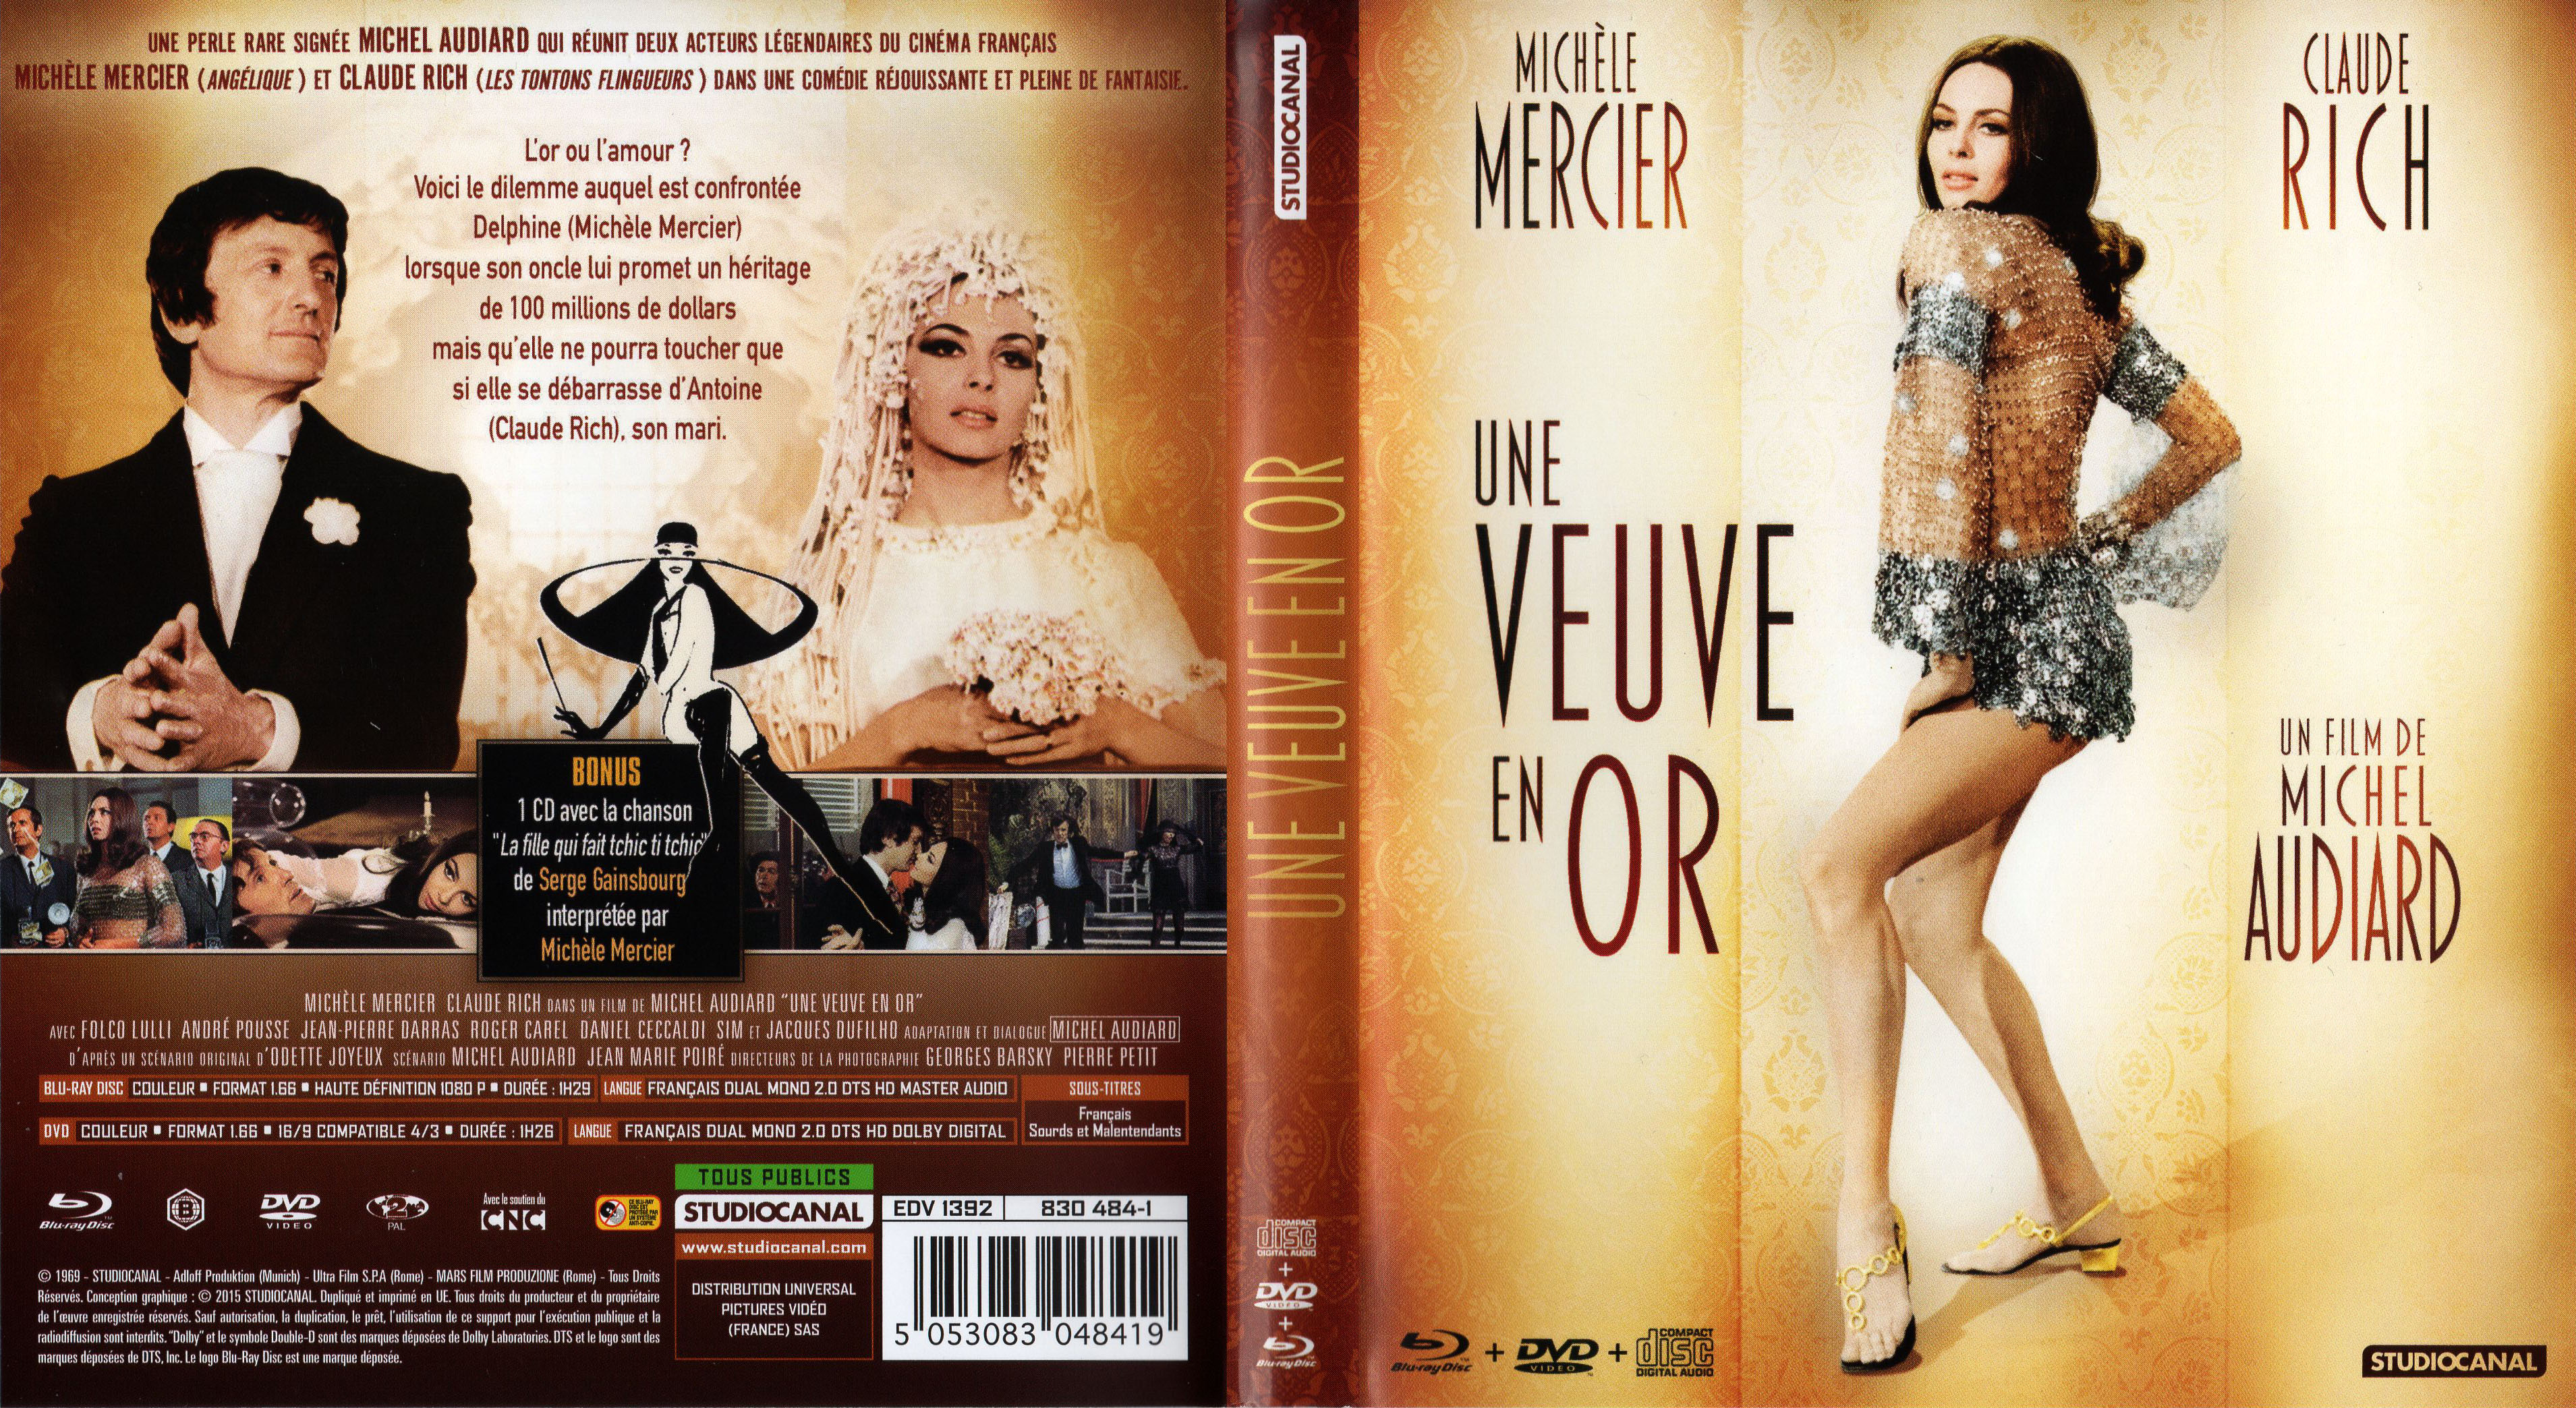 Jaquette DVD Une veuve en or (BLU-RAY)